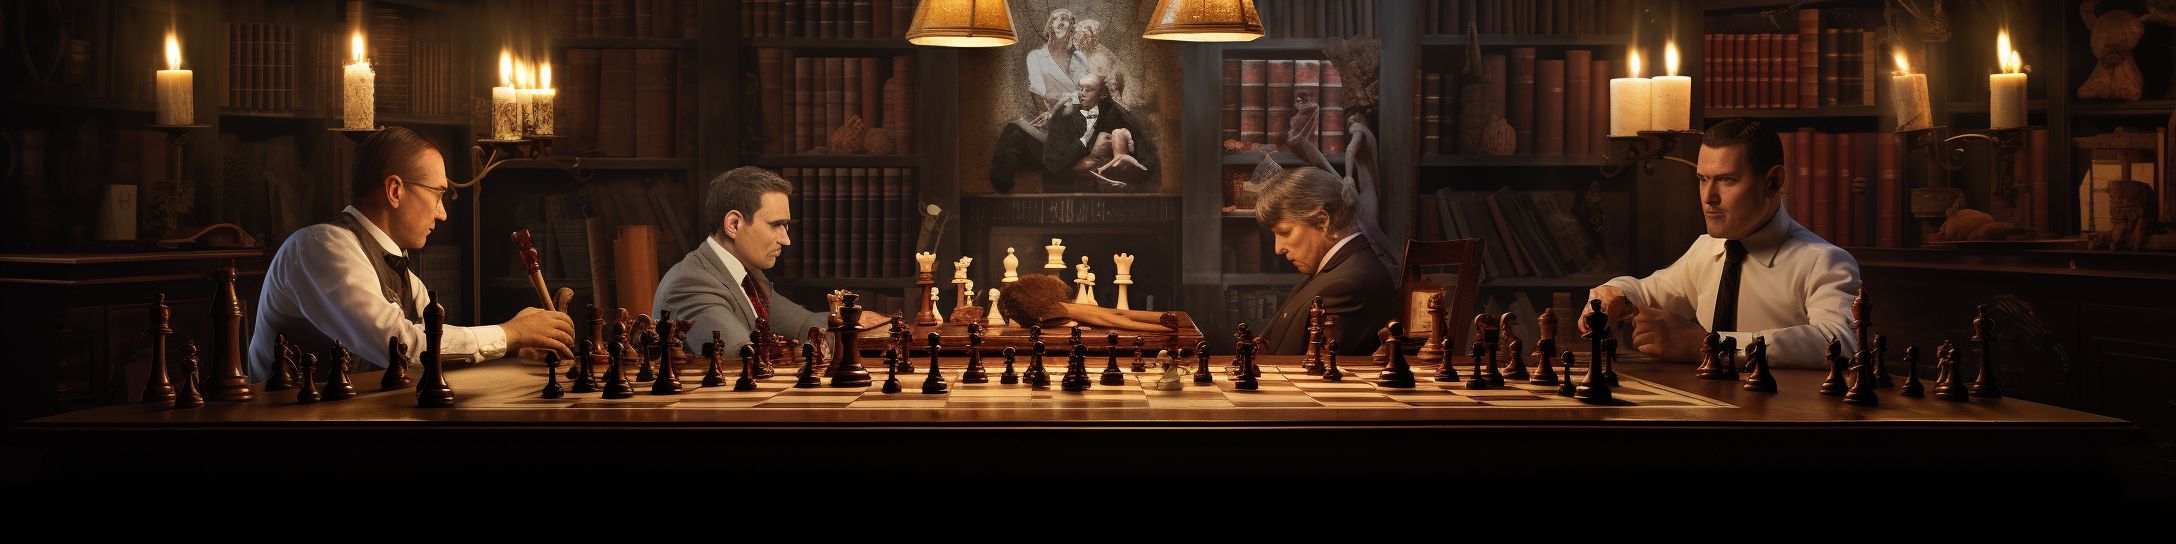 Pourquoi Certaines Personnalités Deviennent-elles Des Joueurs D'échecs Célèbres?